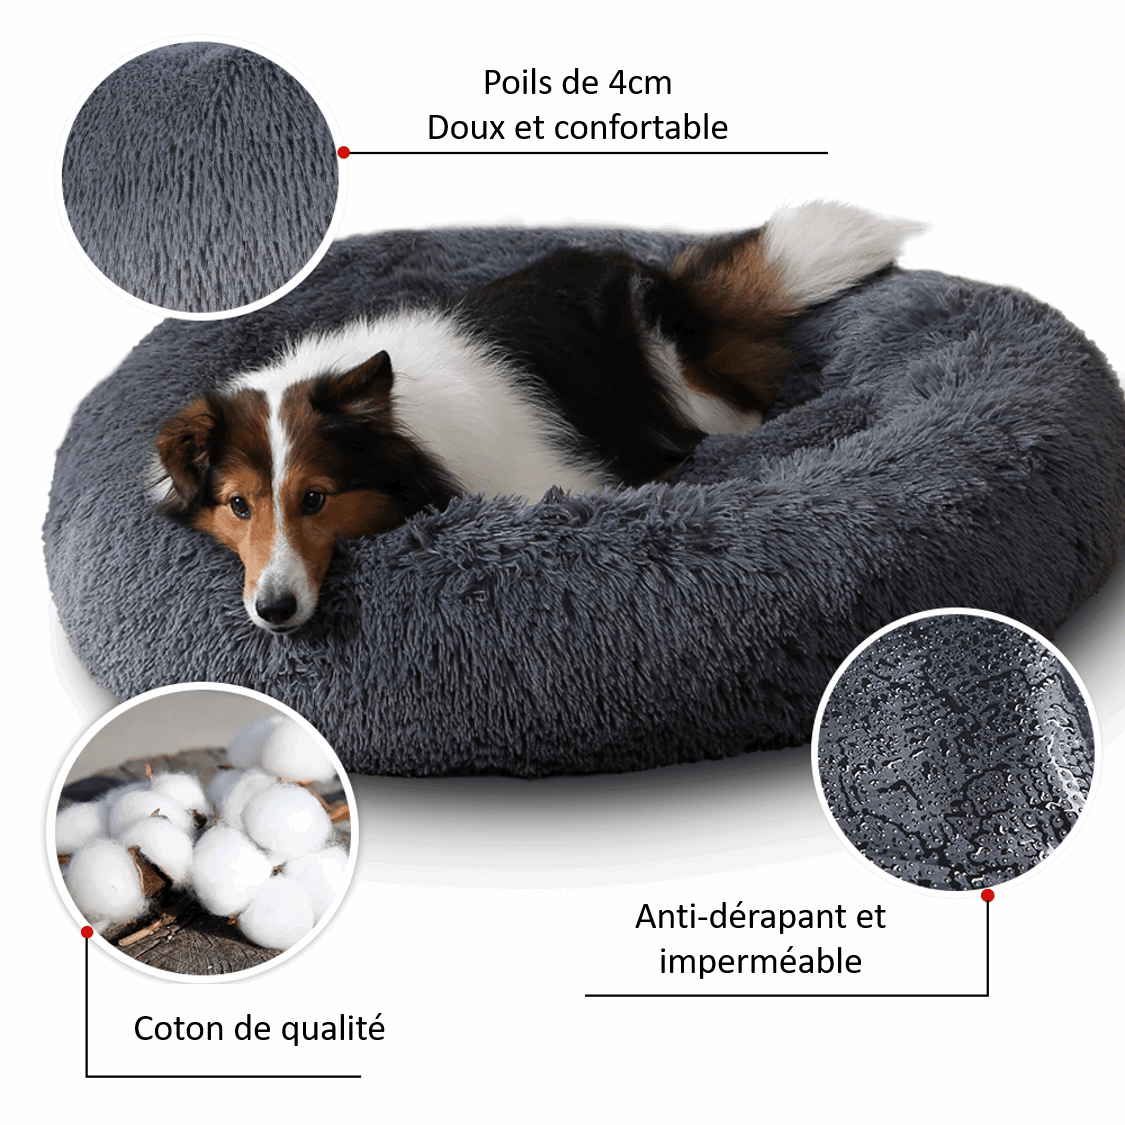 Panier confortable ovale avec rebords pour chien et chat. Inclus jouet